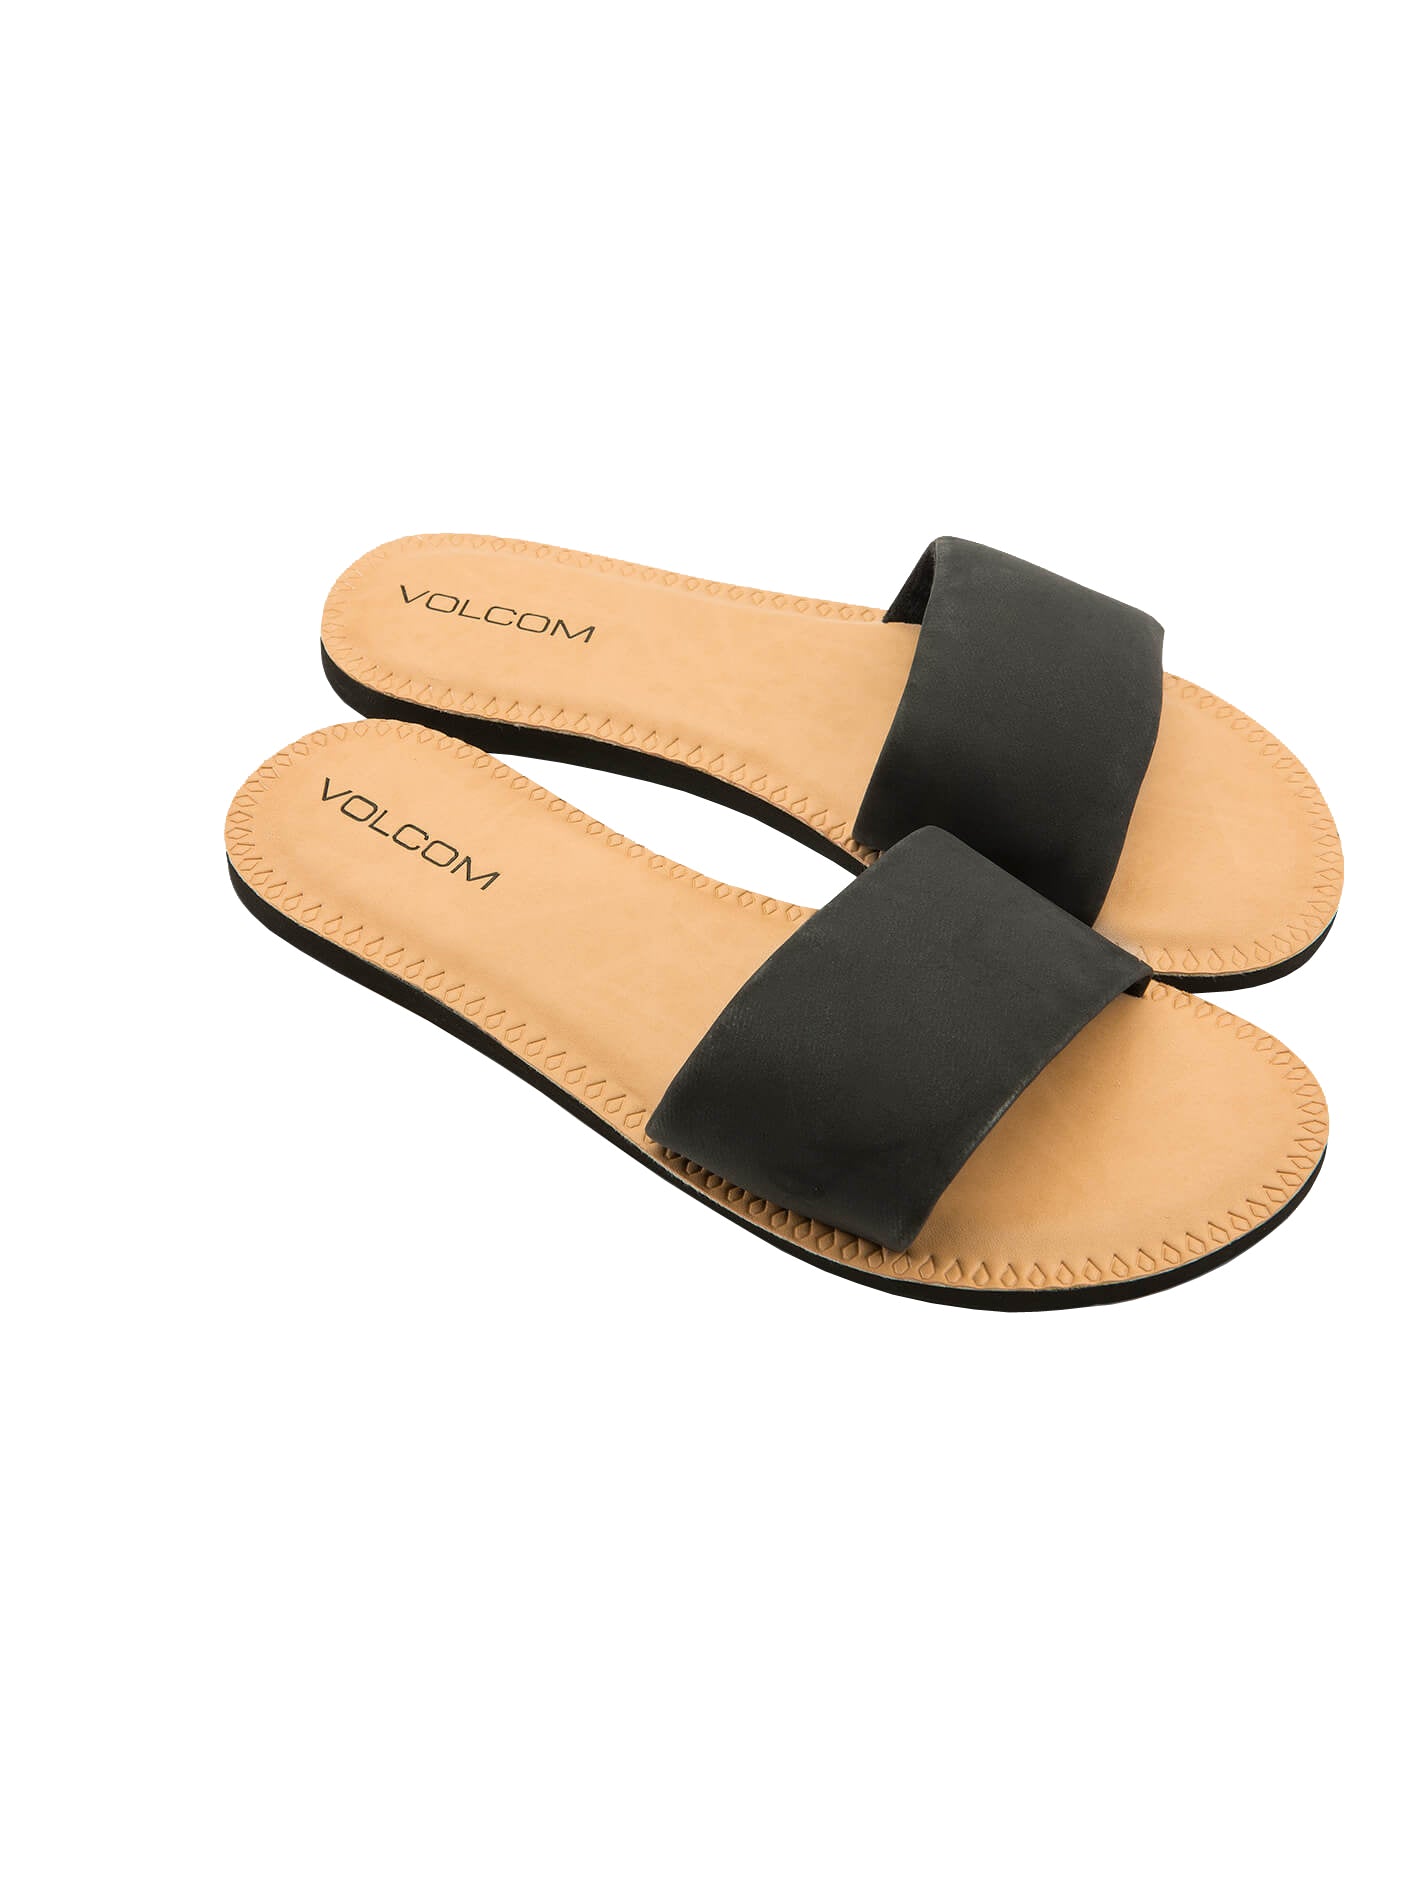 Volcom Simple Slide Womens Sandal BLK-Black 8